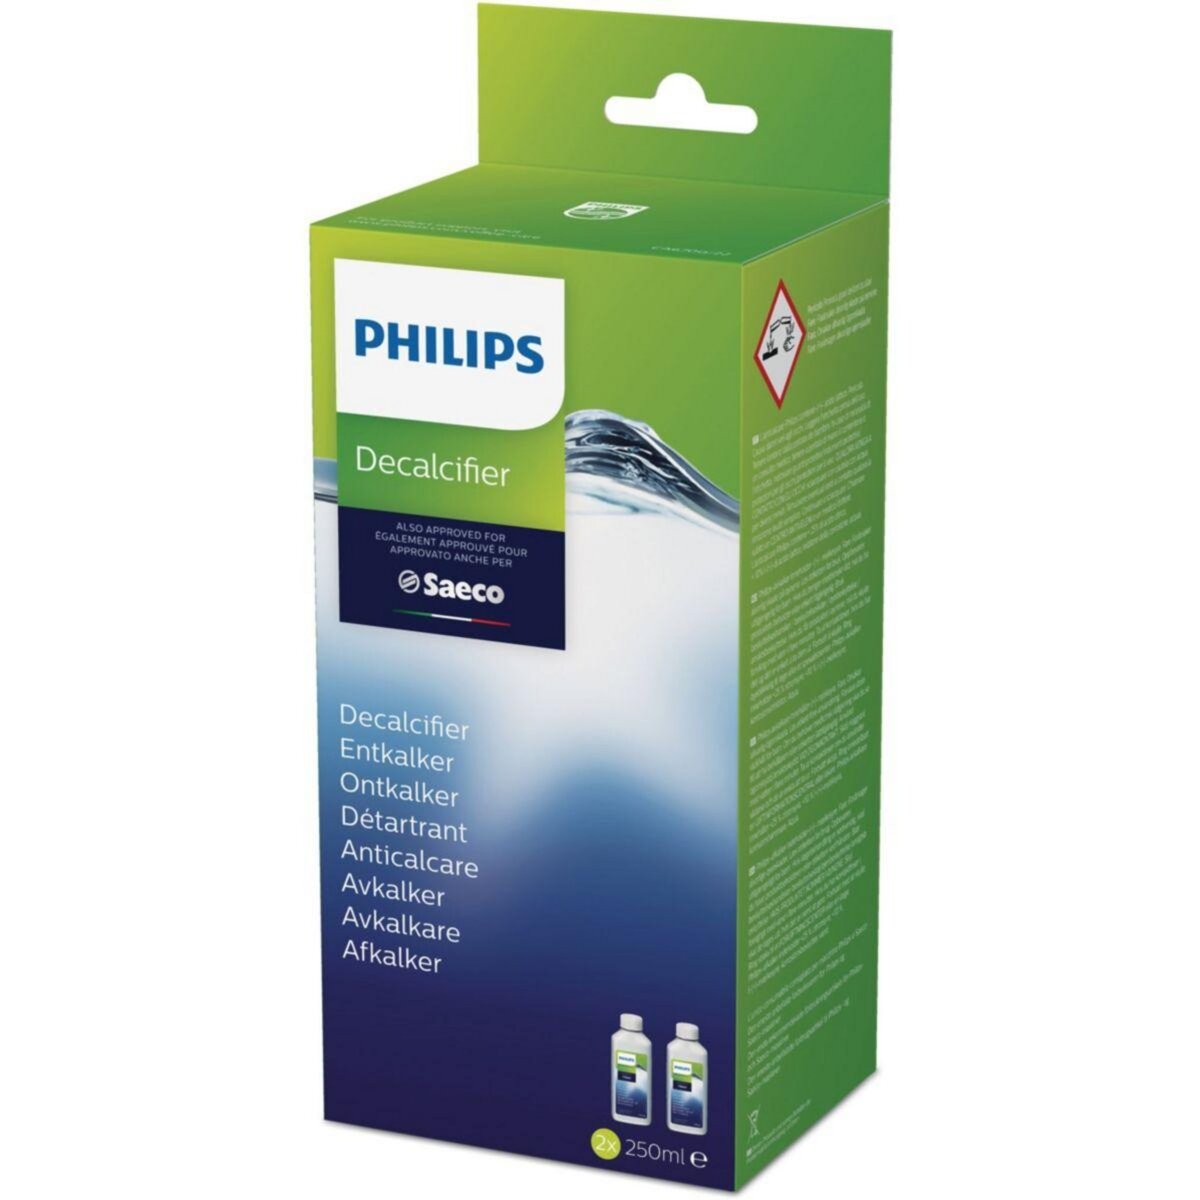 Détartrant liquide Philips CA6700/47